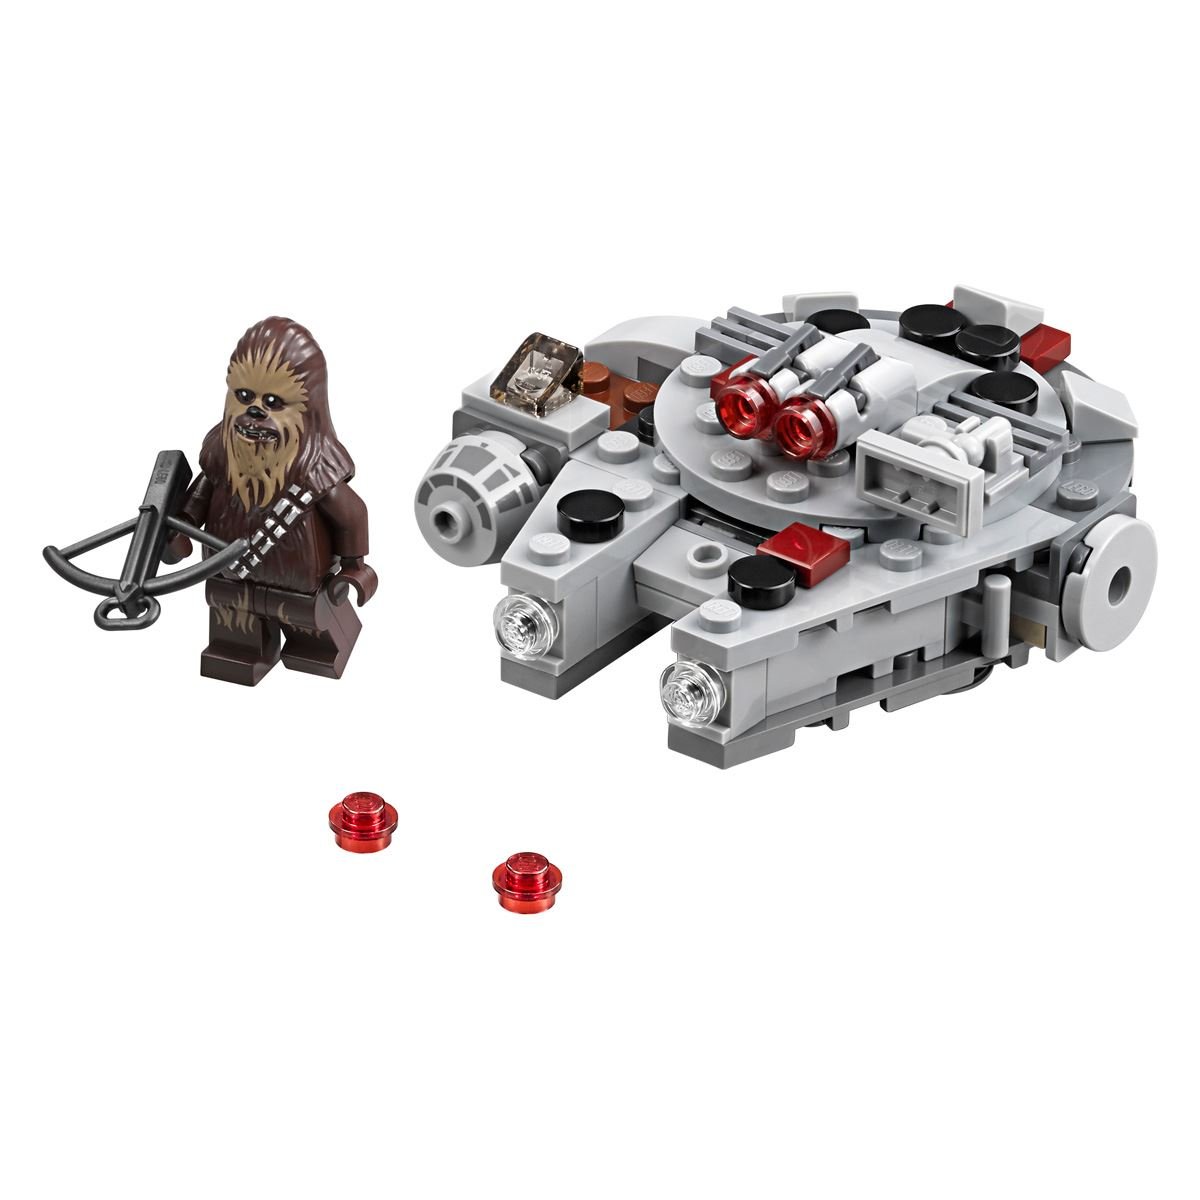 Lego Star Wars Microfighter&#58; Halcón Milenario